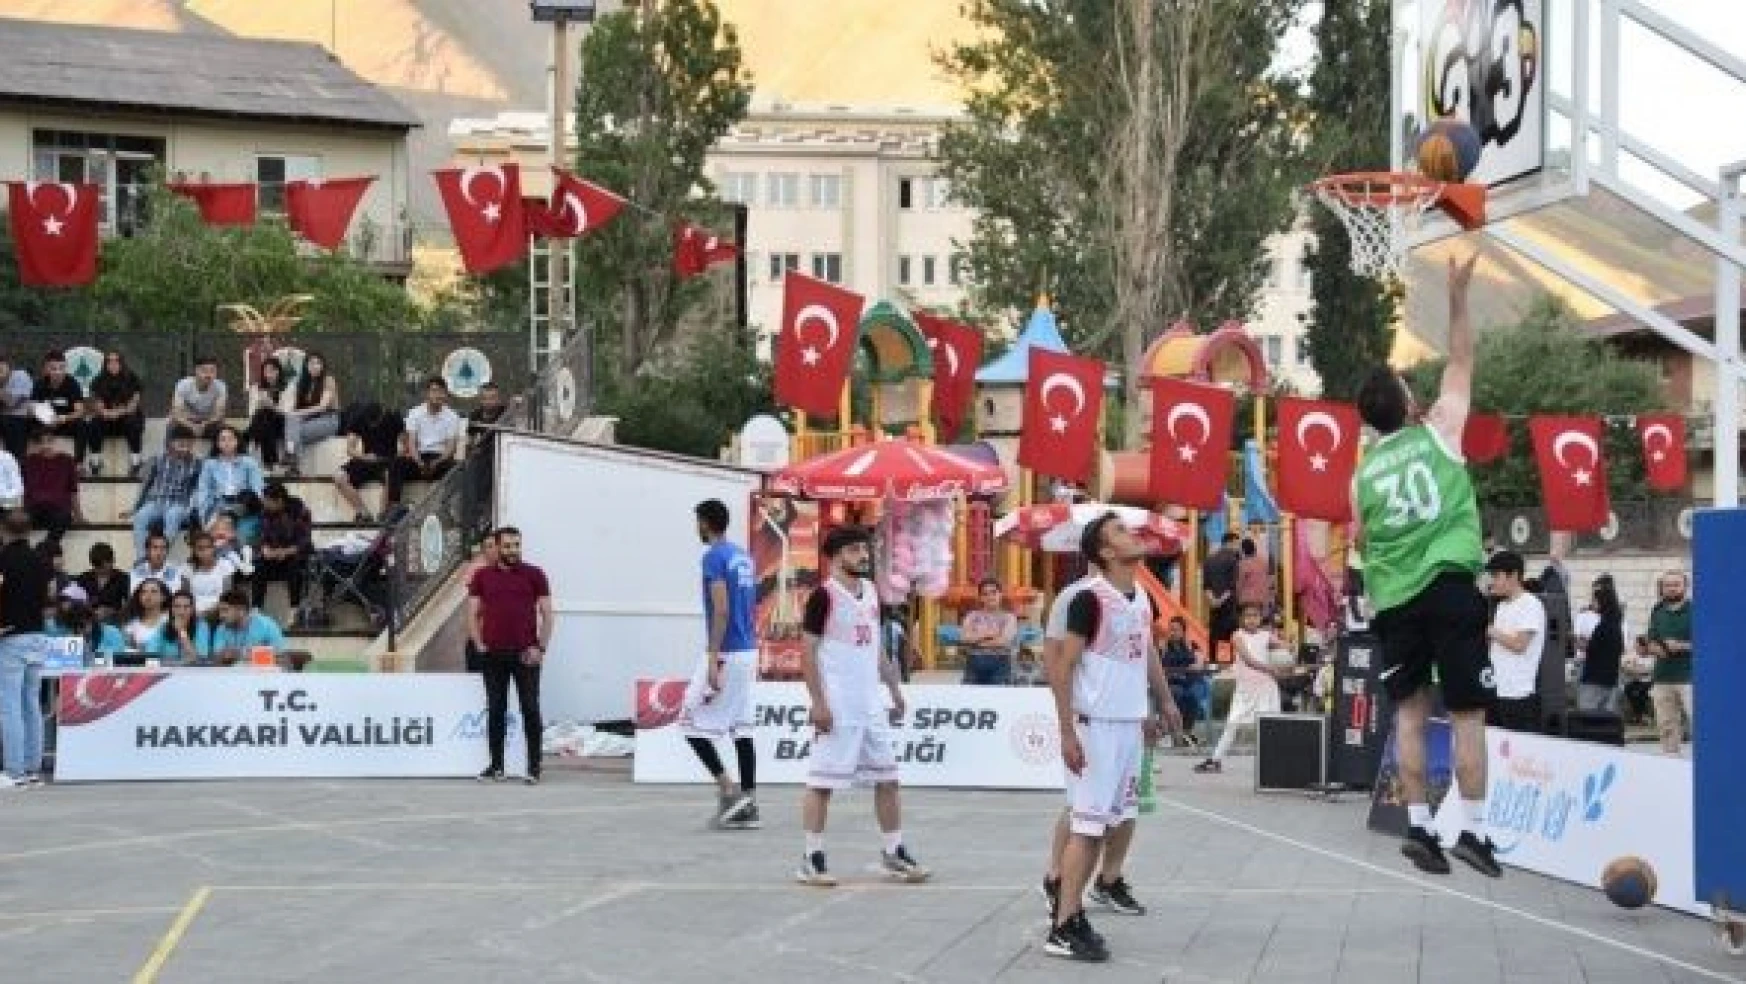 Hakkari'de Ɖx3 Sokak Basketbol Şampiyonası' düzenlendi